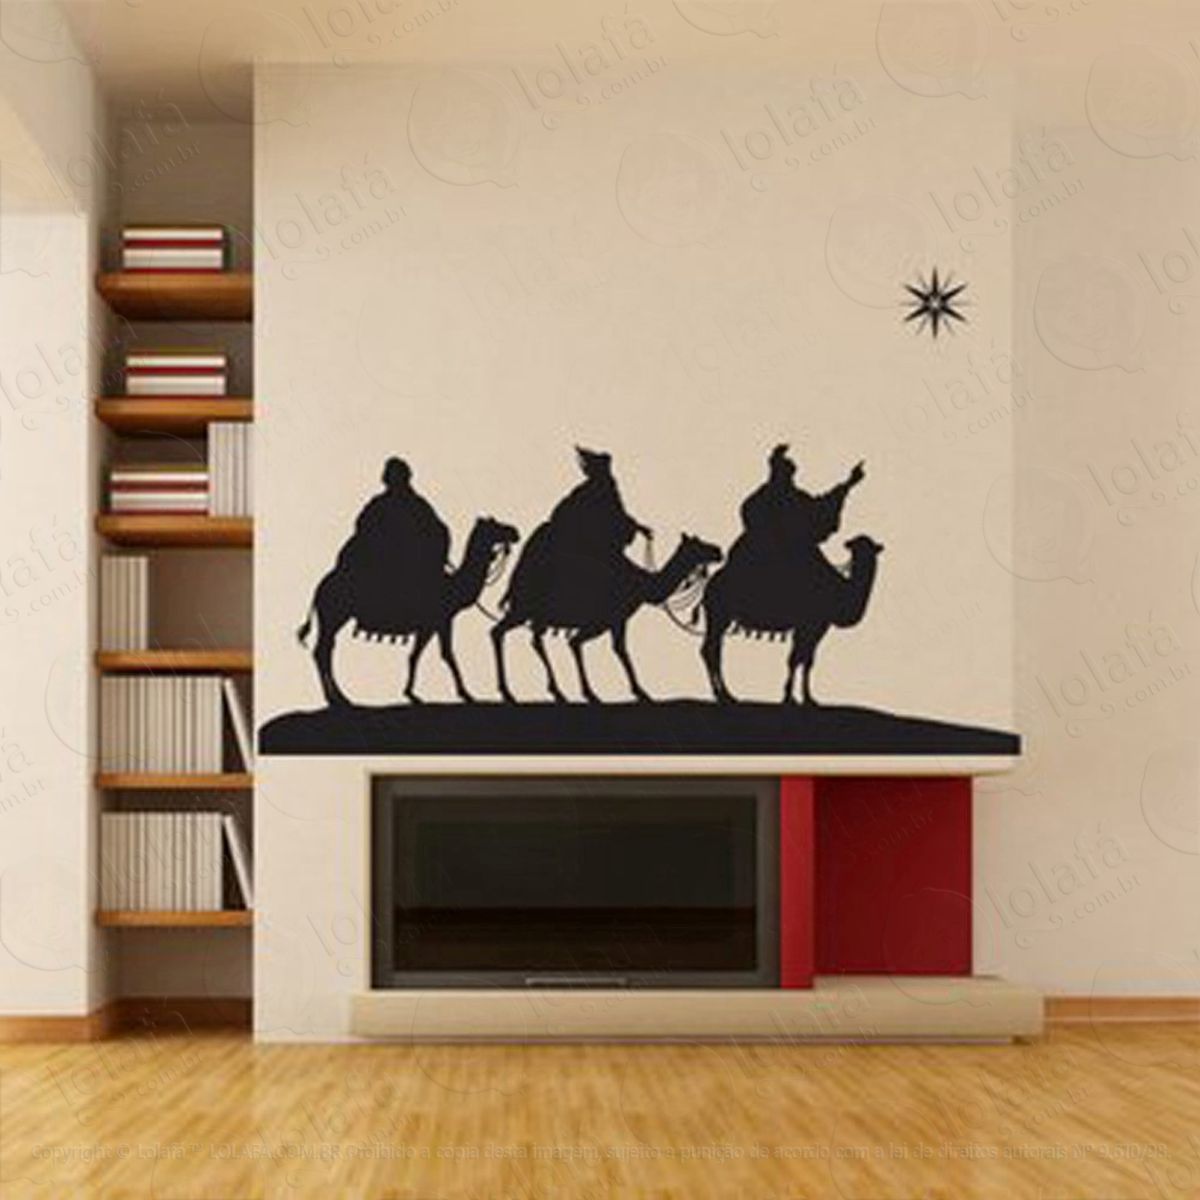 reis magos adesivo de natal para vitrine, parede, porta de vidro - decoração natalina mod:205